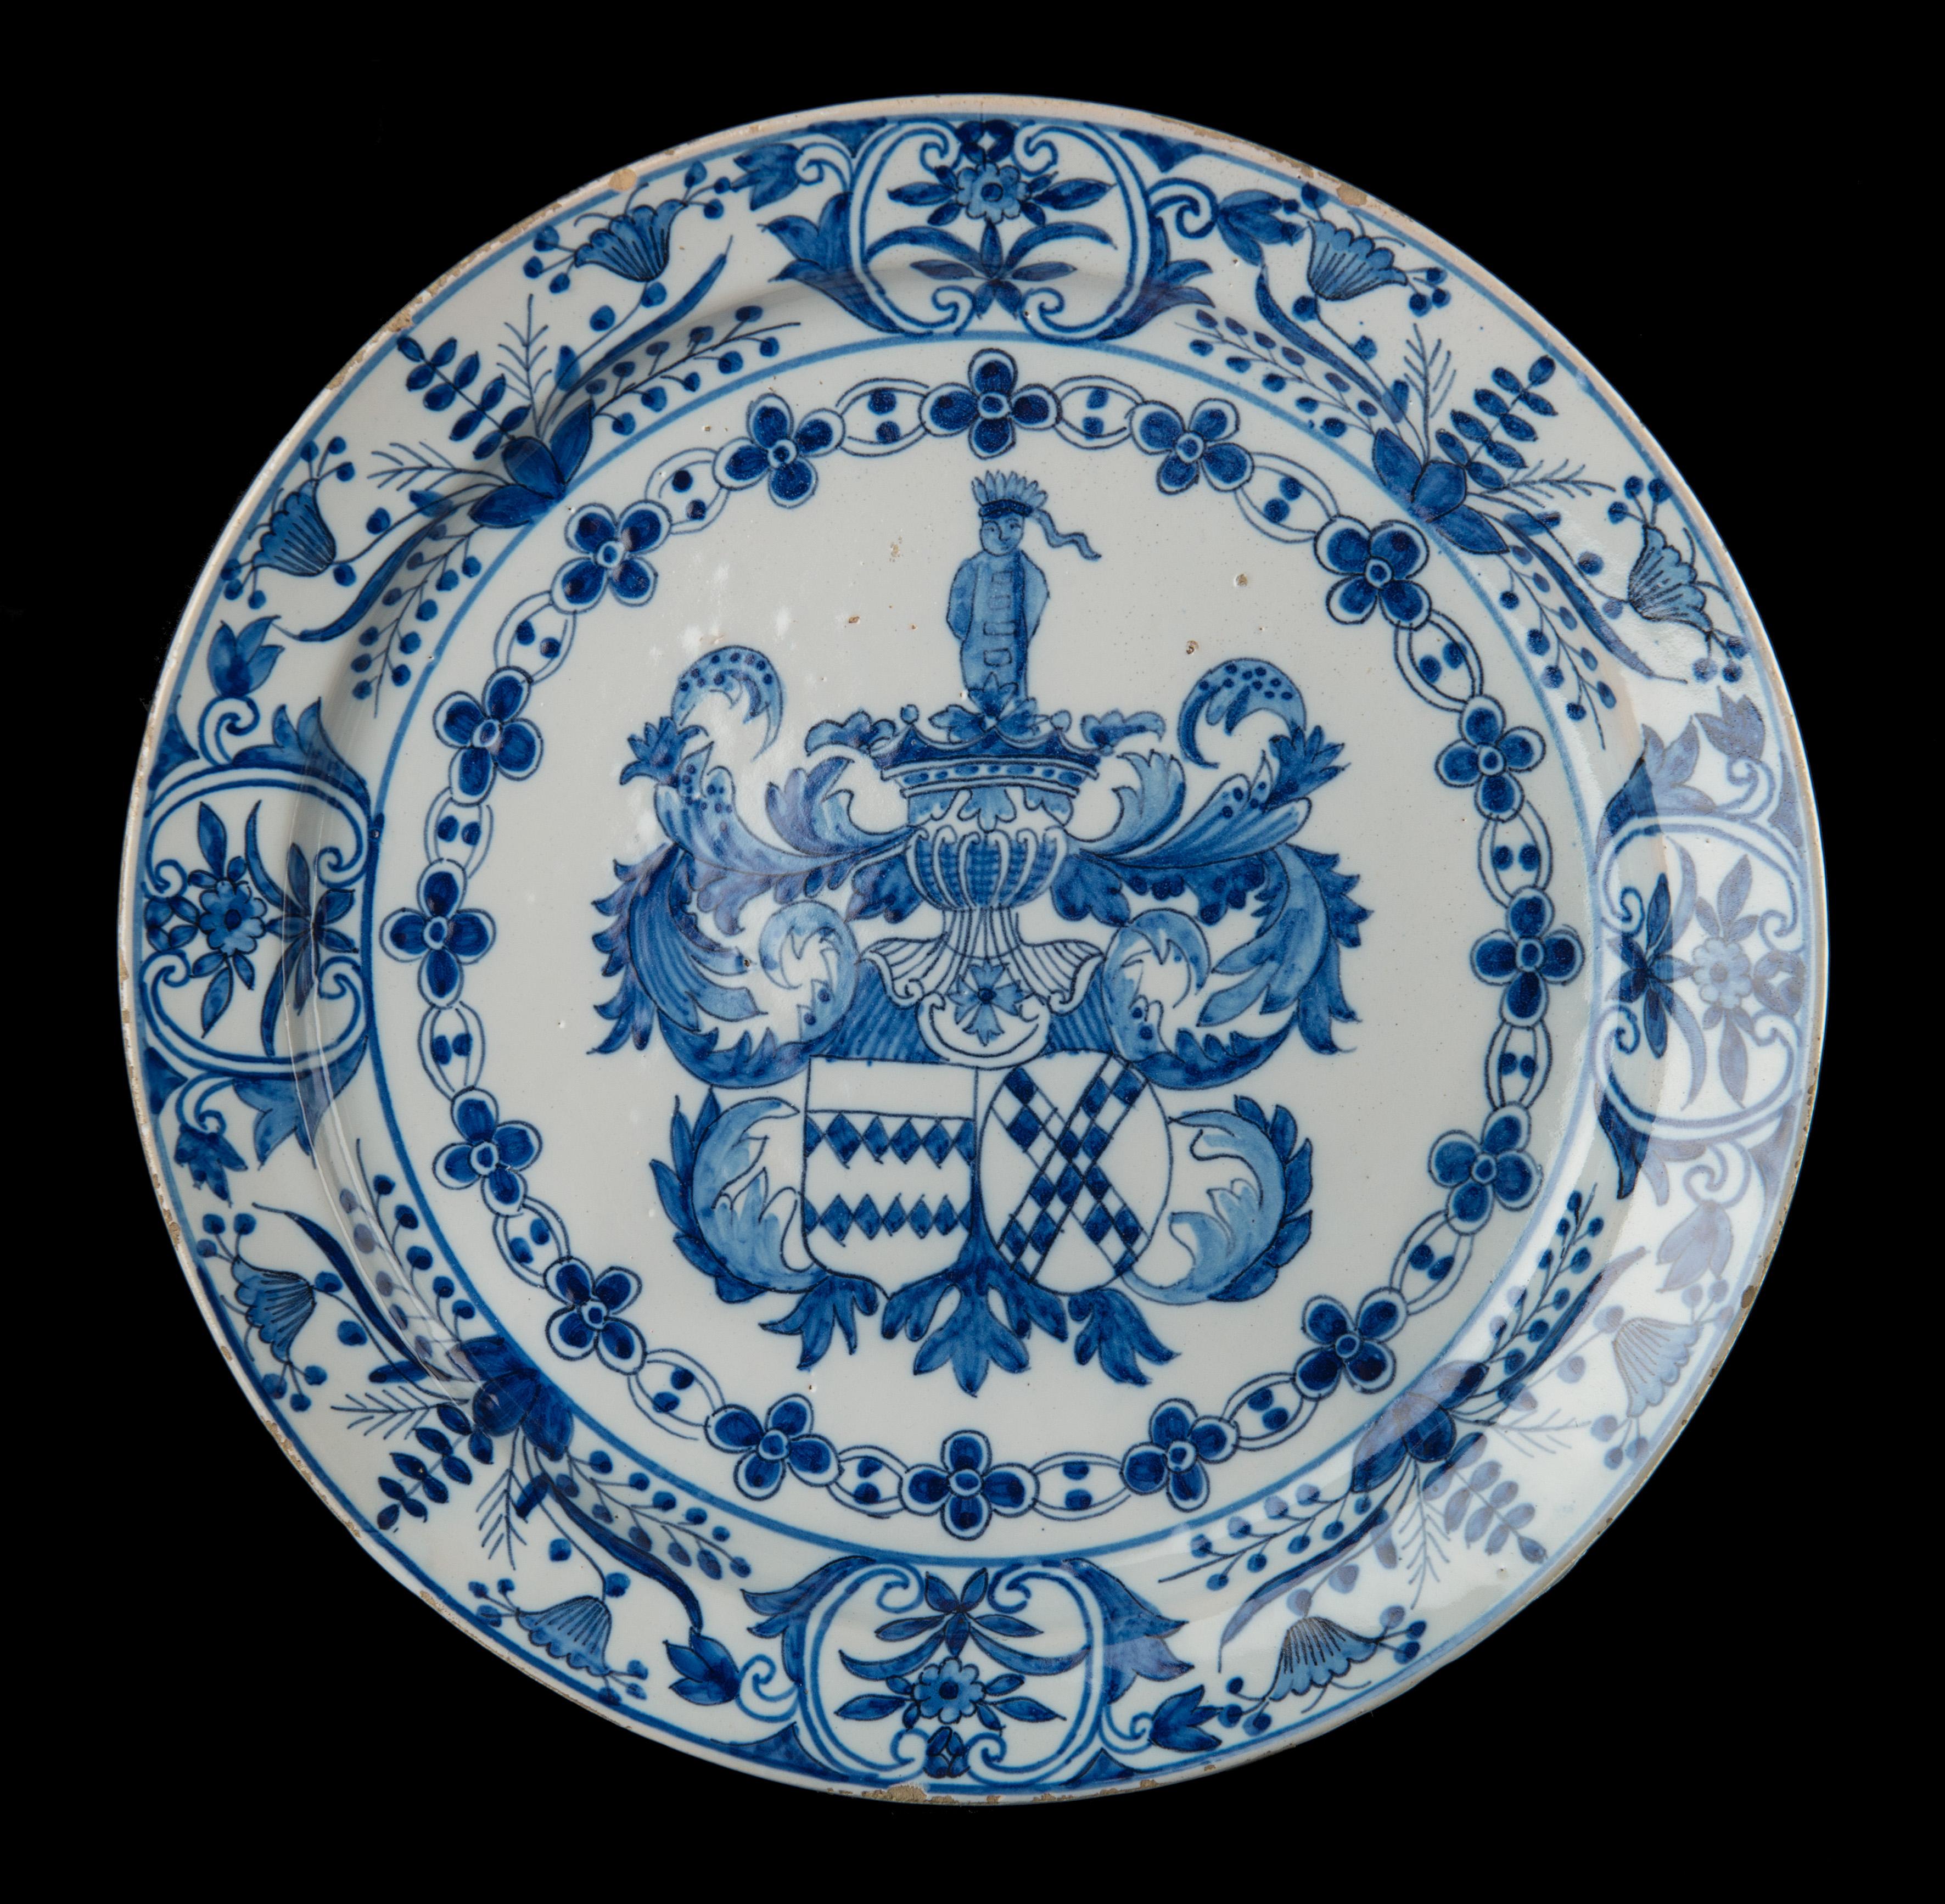 Plaque armoriée bleue et blanche avec les armoiries de Johan van der Does et Elisabeth van der Dussen. 
Delft, 1686-1701. La poterie grecque A. Marque : AK, période d'Adrianus Kocx (1686-1701) 

L'assiette bleue et blanche repose sur un pied et